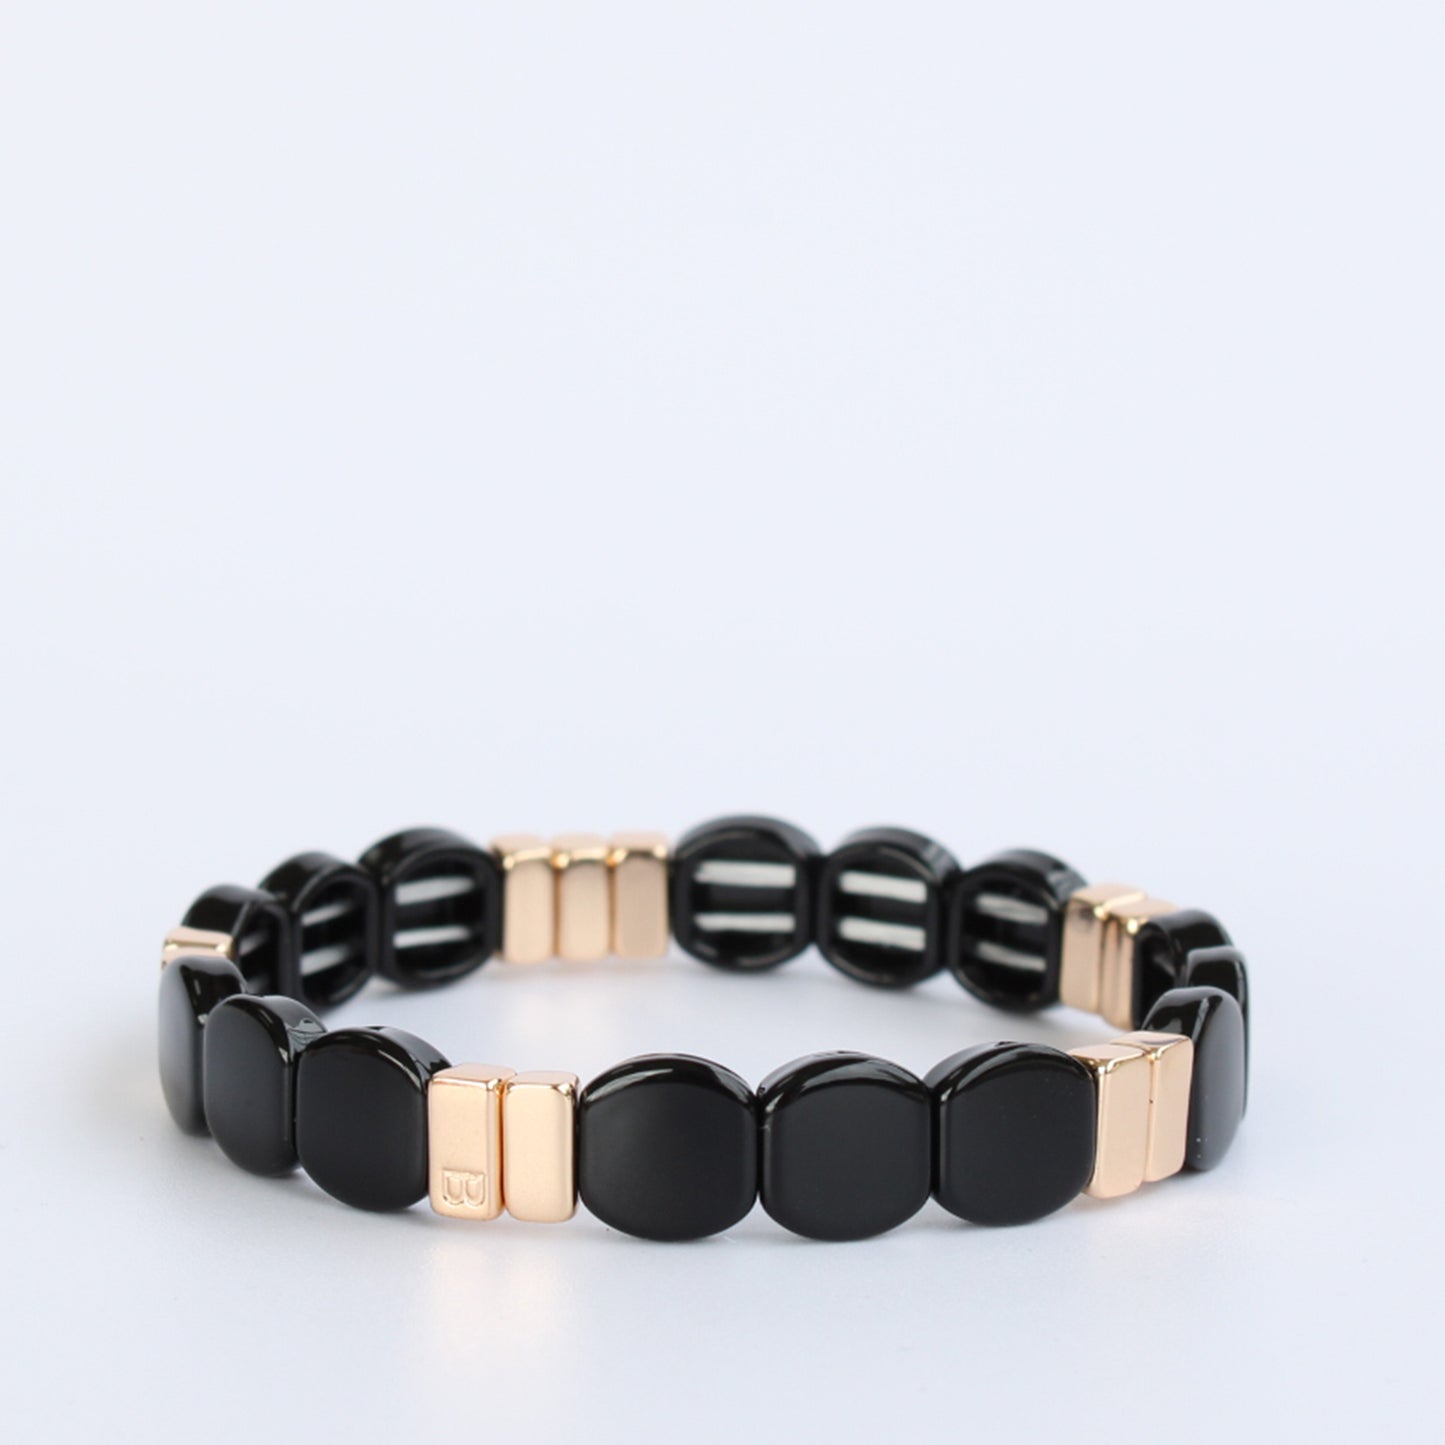 Black enamel and gold tile stretch bracelet